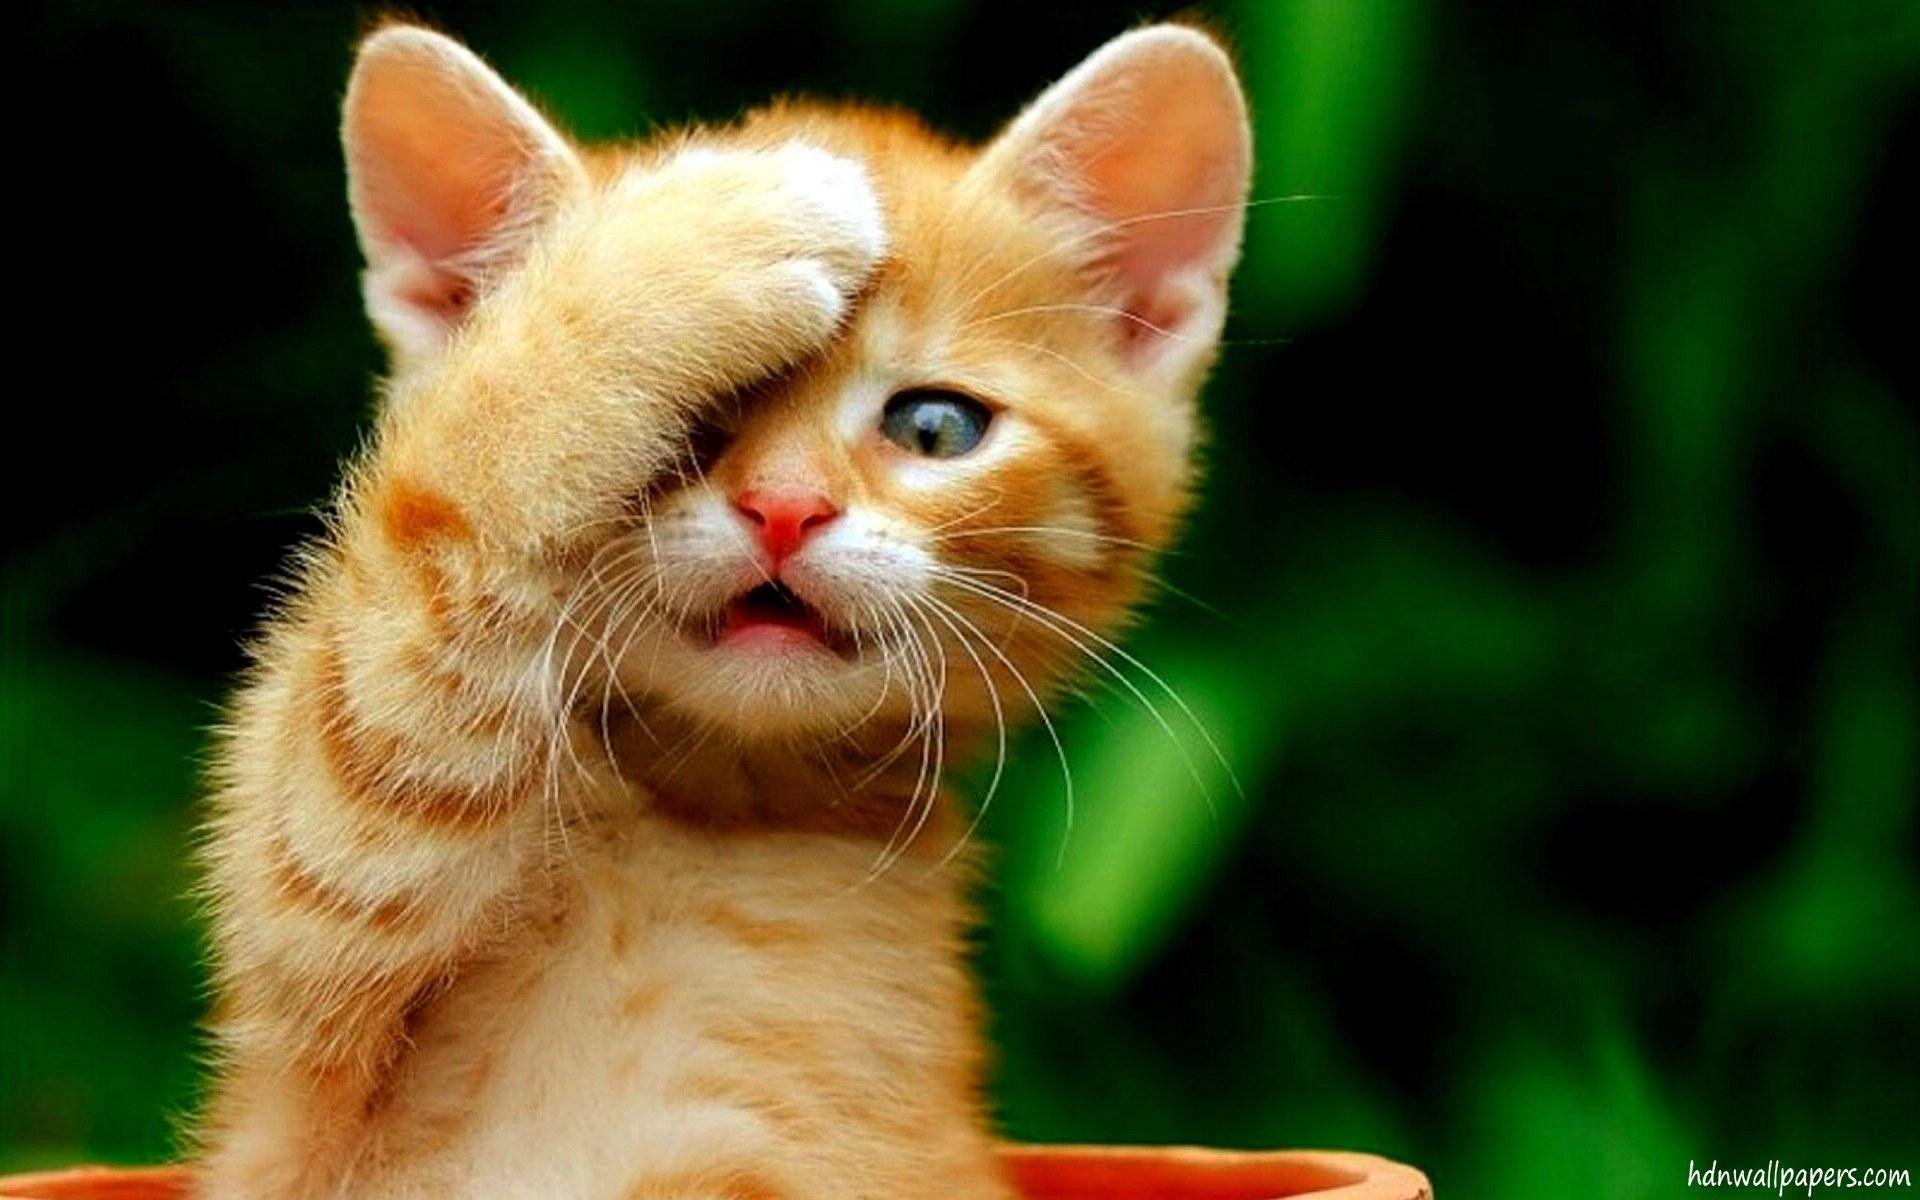 Cute Kitten Wallpaper HD Free Download For PC